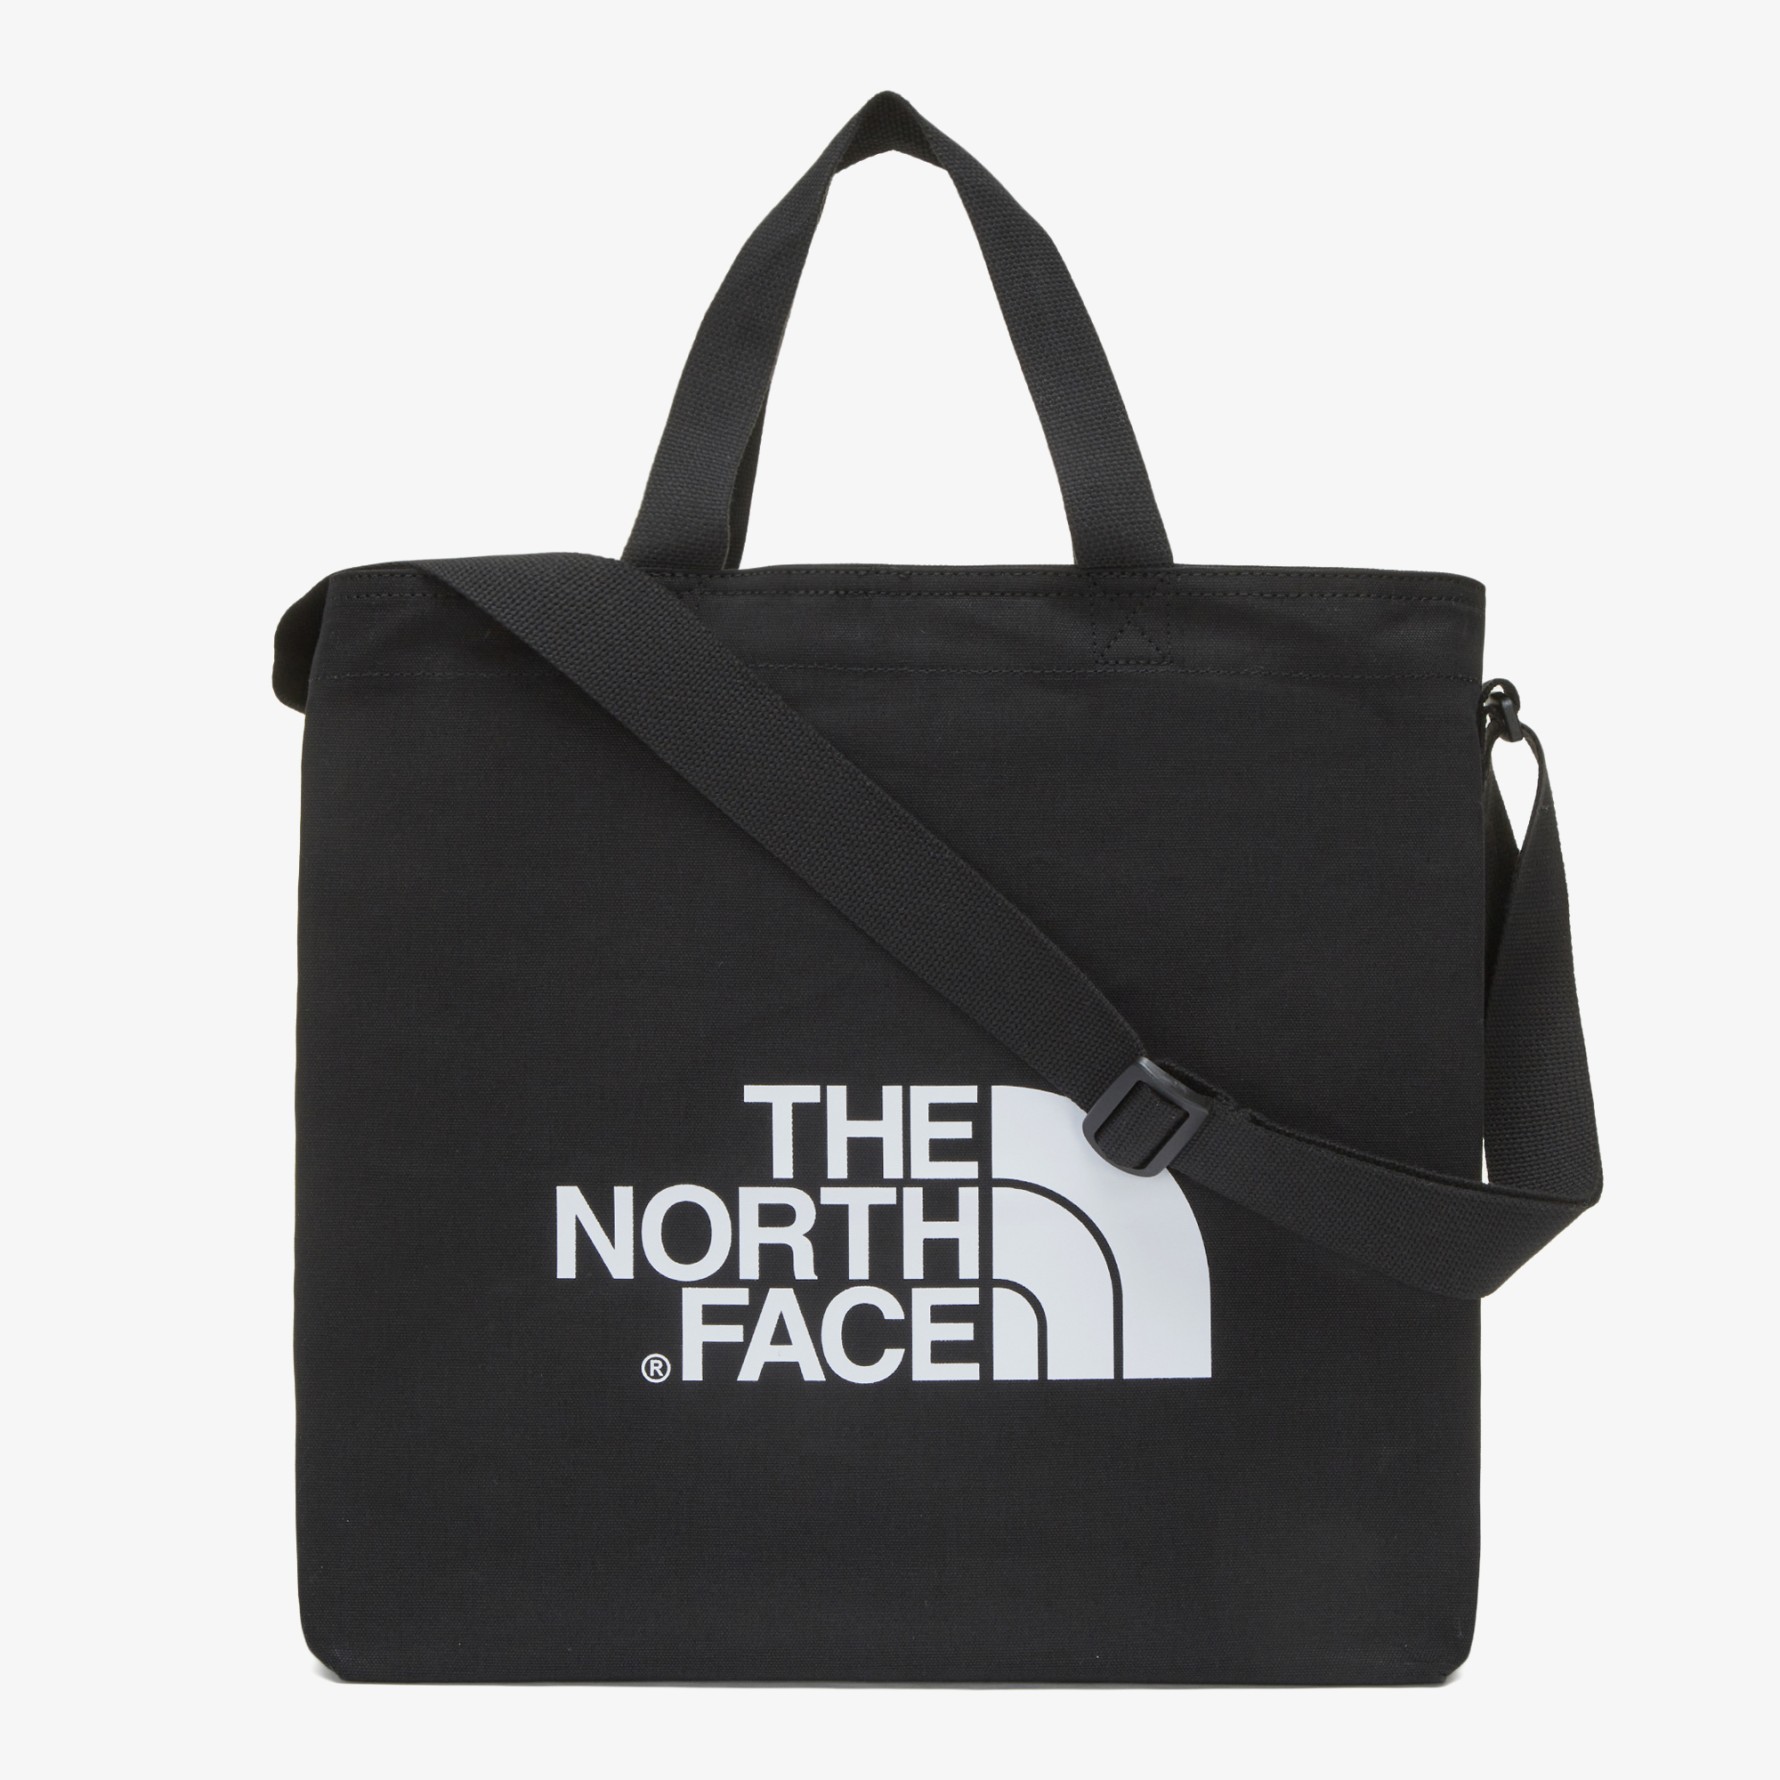 THE NORTH FACE - BIG LOGO SHOULDER BAG (BLACK)